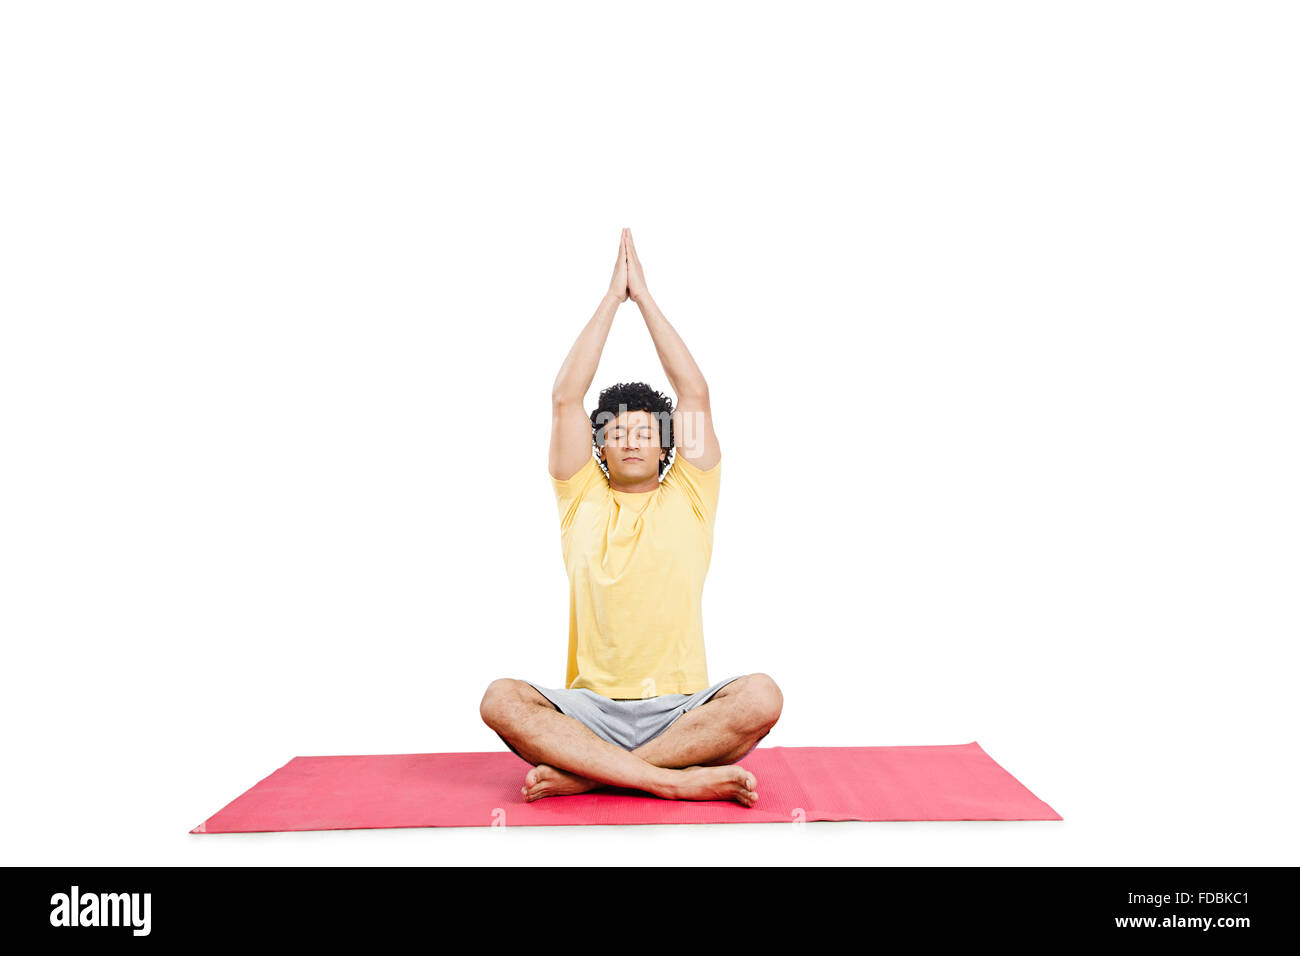 Yoga Poses Poster - Dekali Designs